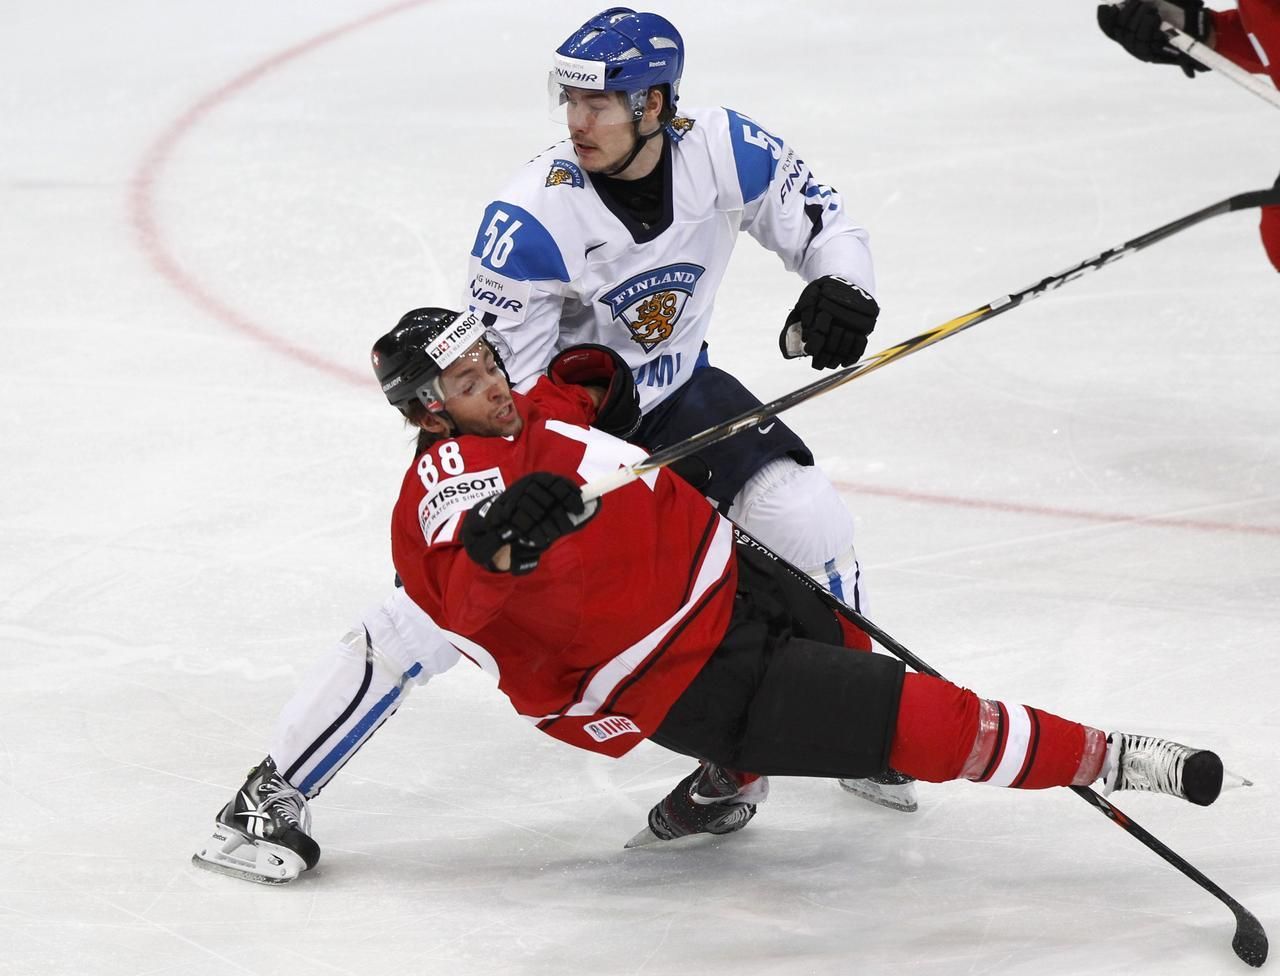 MS v hokeji 2012: Finsko - Švýcarsko (Jarvinen, Romy)